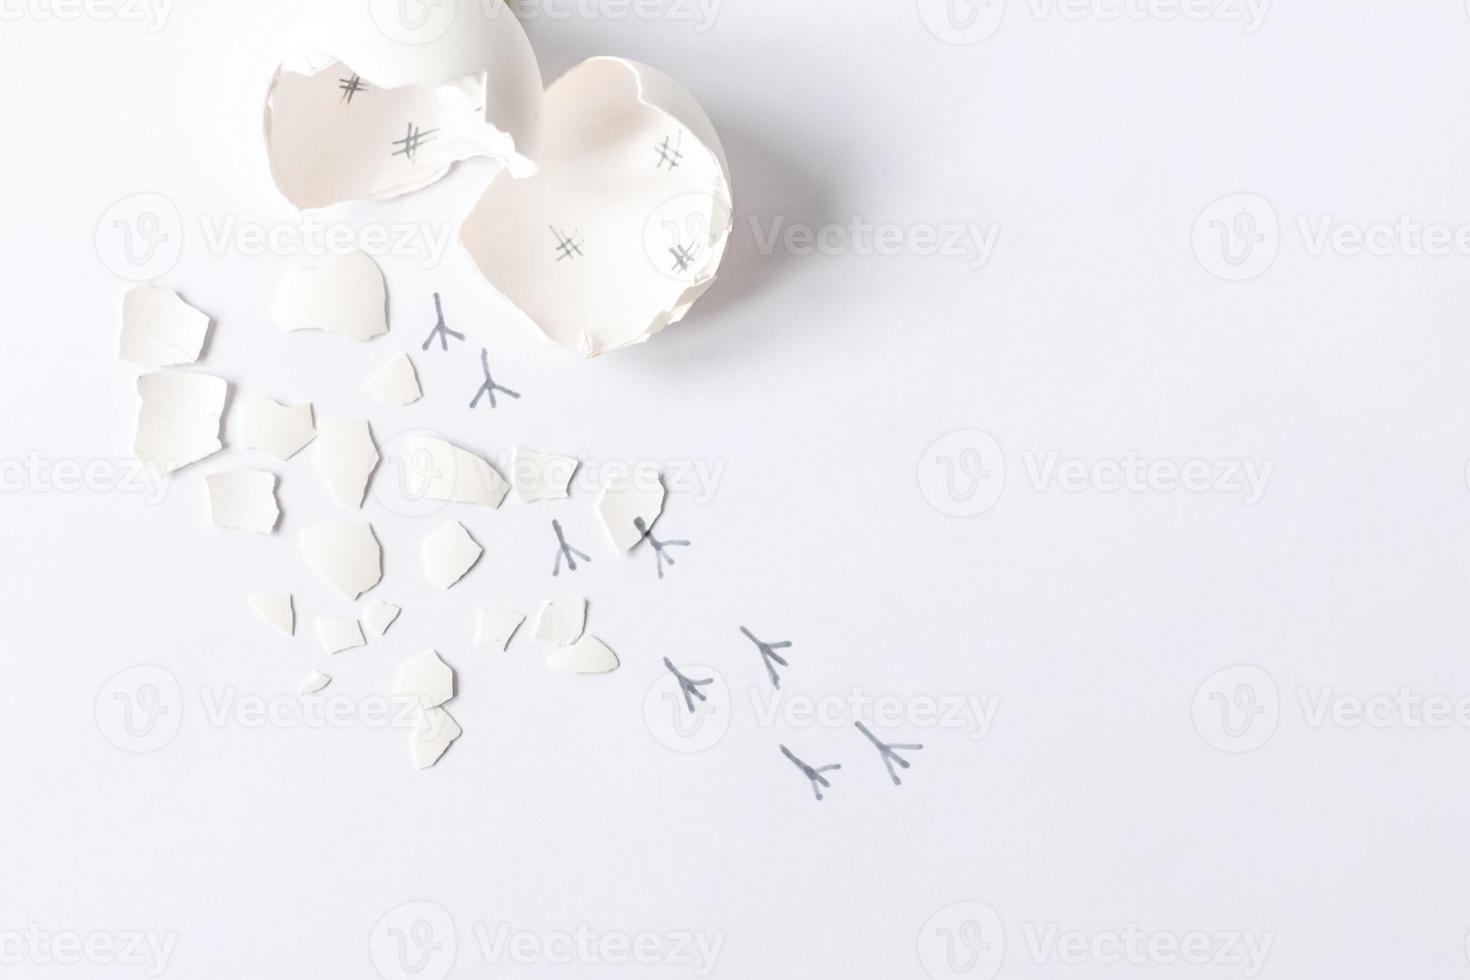 Guscio d'uovo bianco di un uovo di gallina rotto con cocci e impronte di un pulcino isolato su uno sfondo bianco.pasqua foto